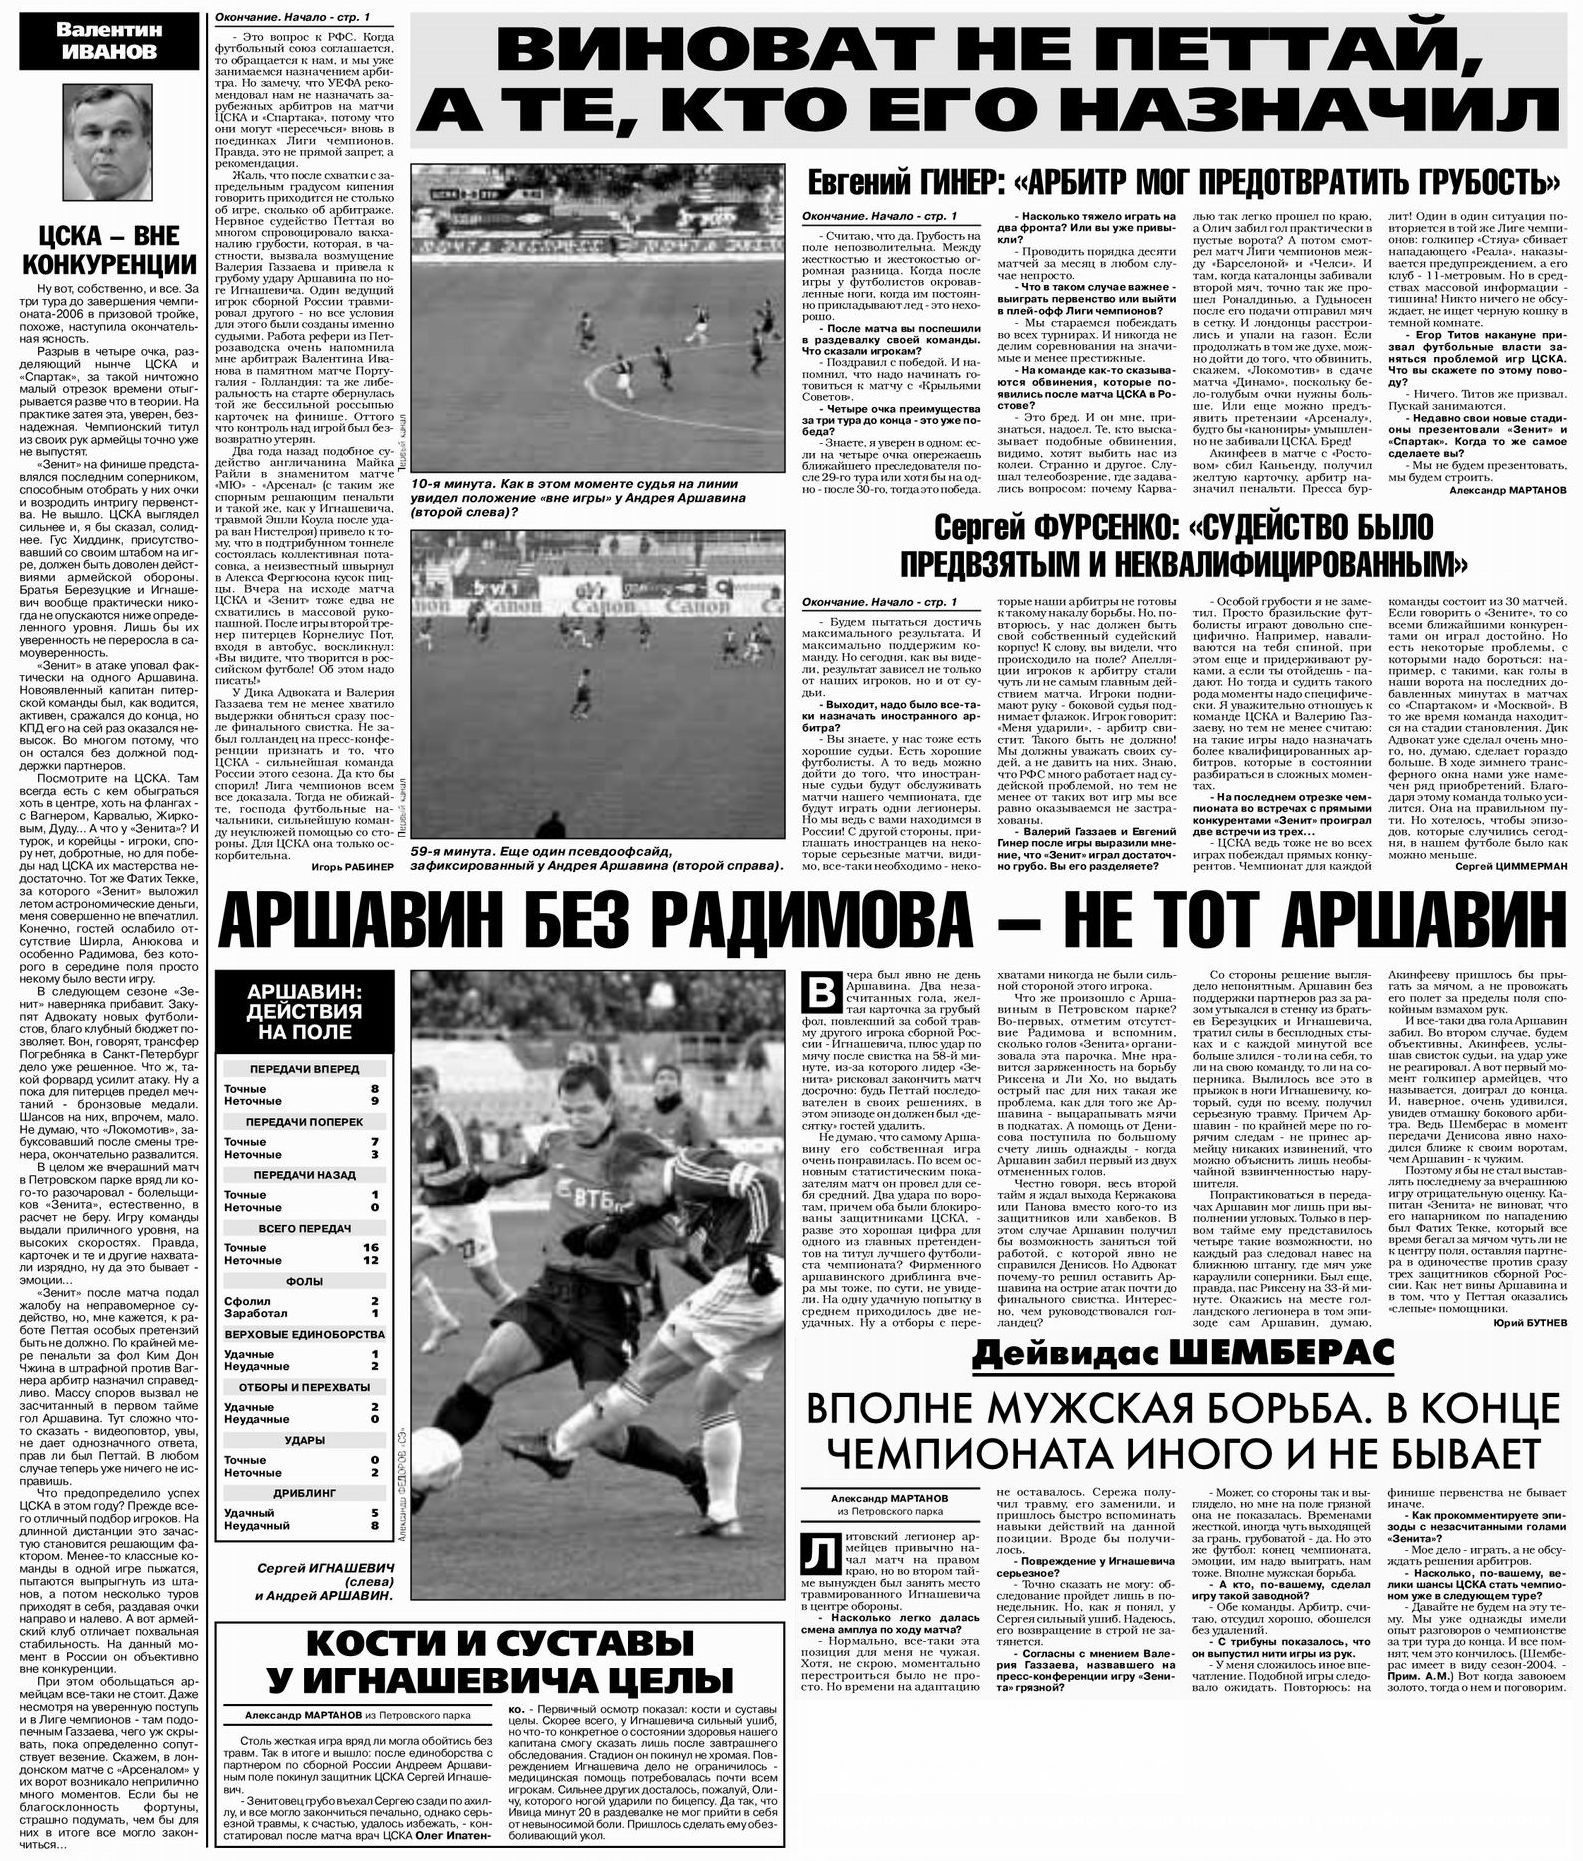 2006-11-05.CSKA-Zenit.3